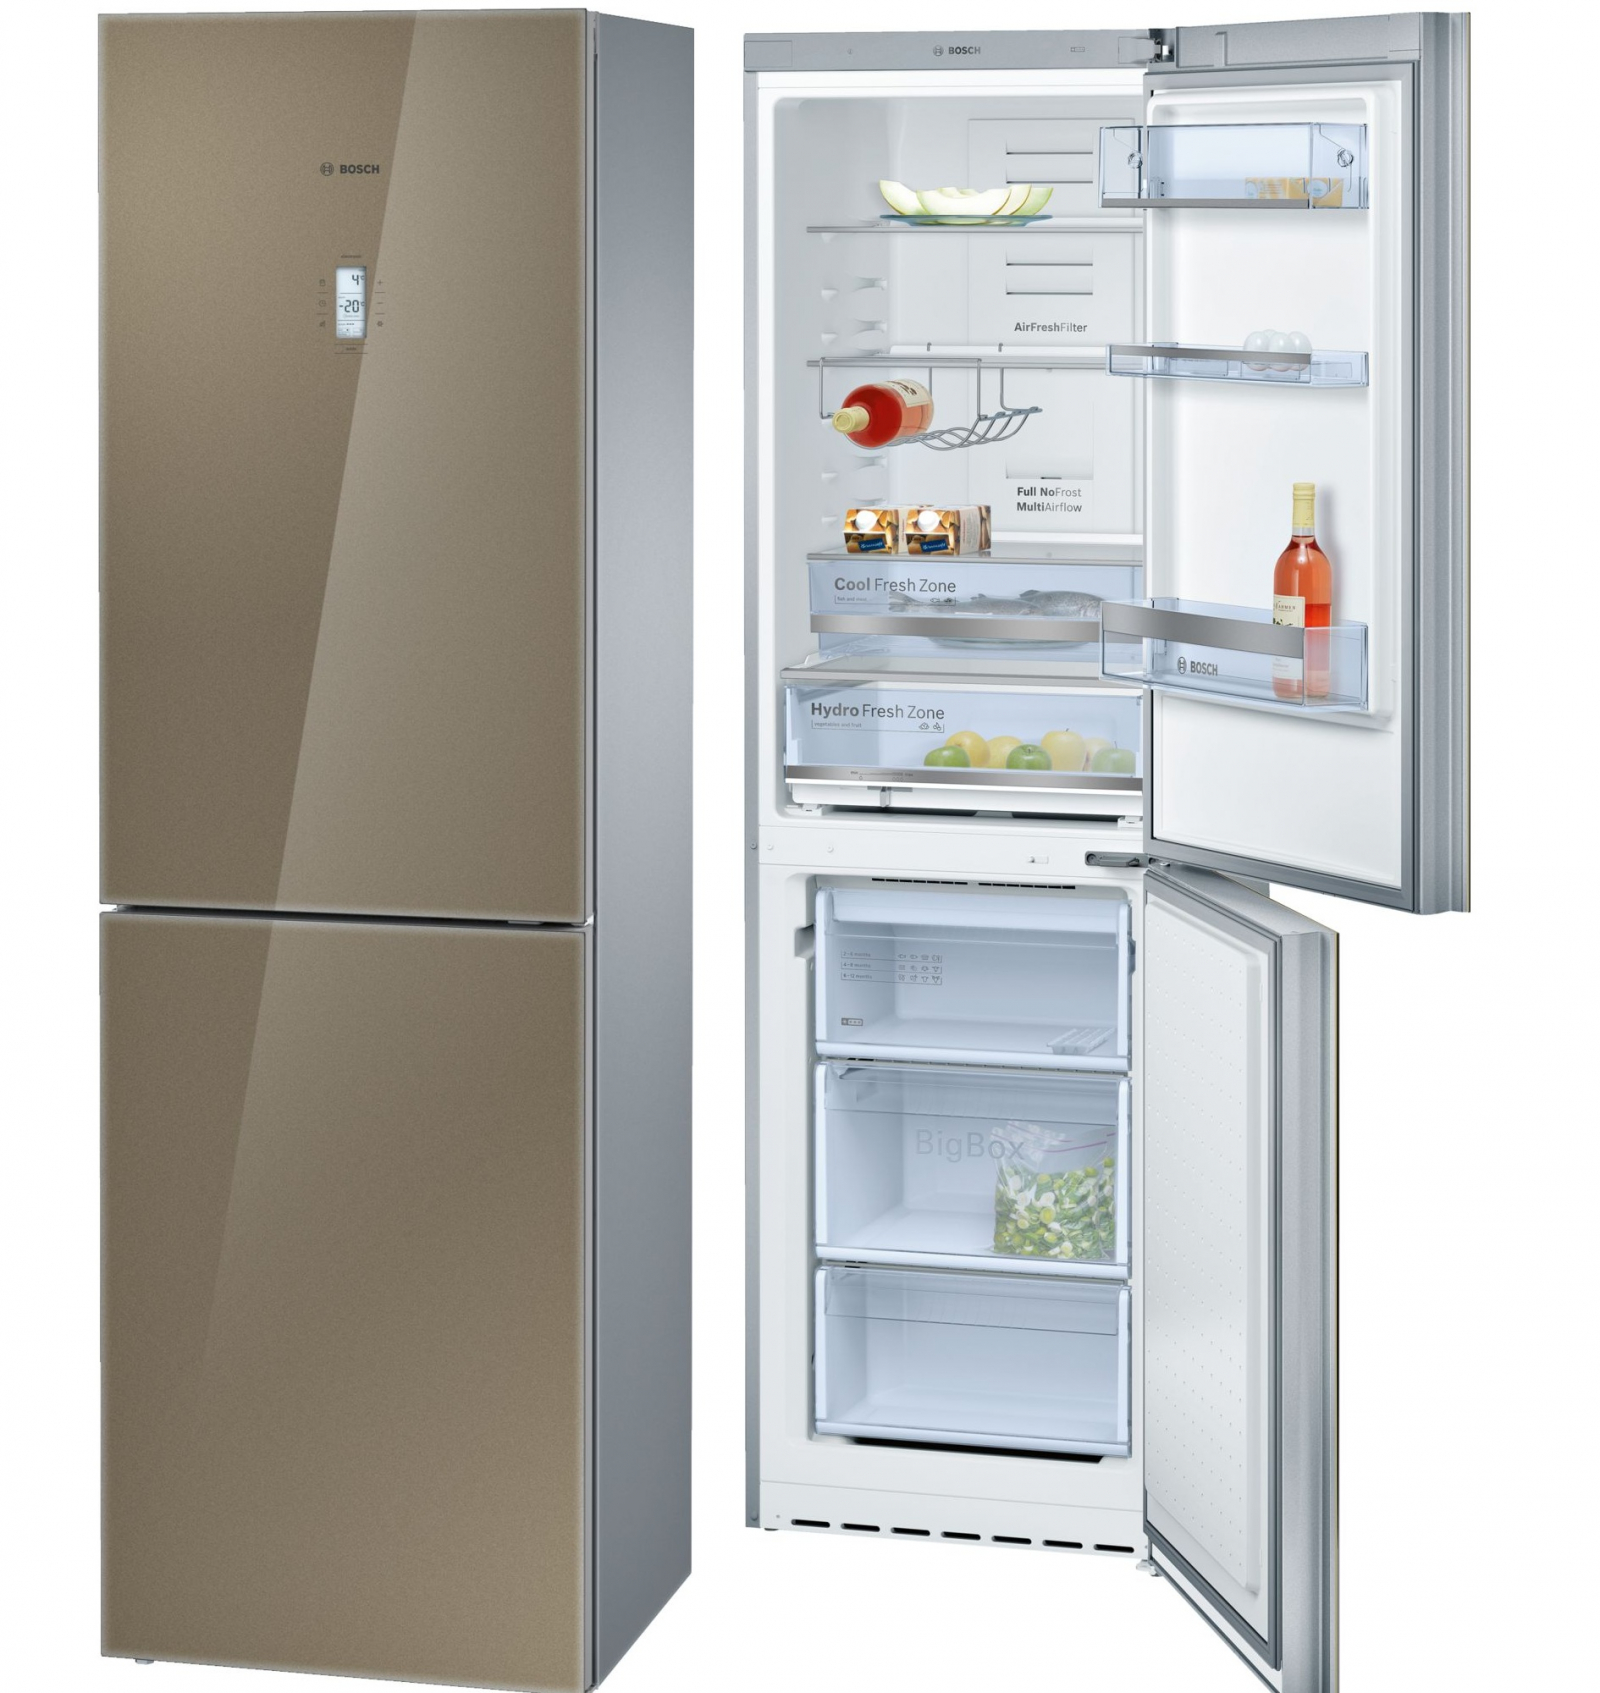 холодильник bosch kgn39sq10r, купить в Красноярске холодильник bosch kgn39sq10r,  купить в Красноярске дешево холодильник bosch kgn39sq10r, купить в Красноярске минимальной цене холодильник bosch kgn39sq10r